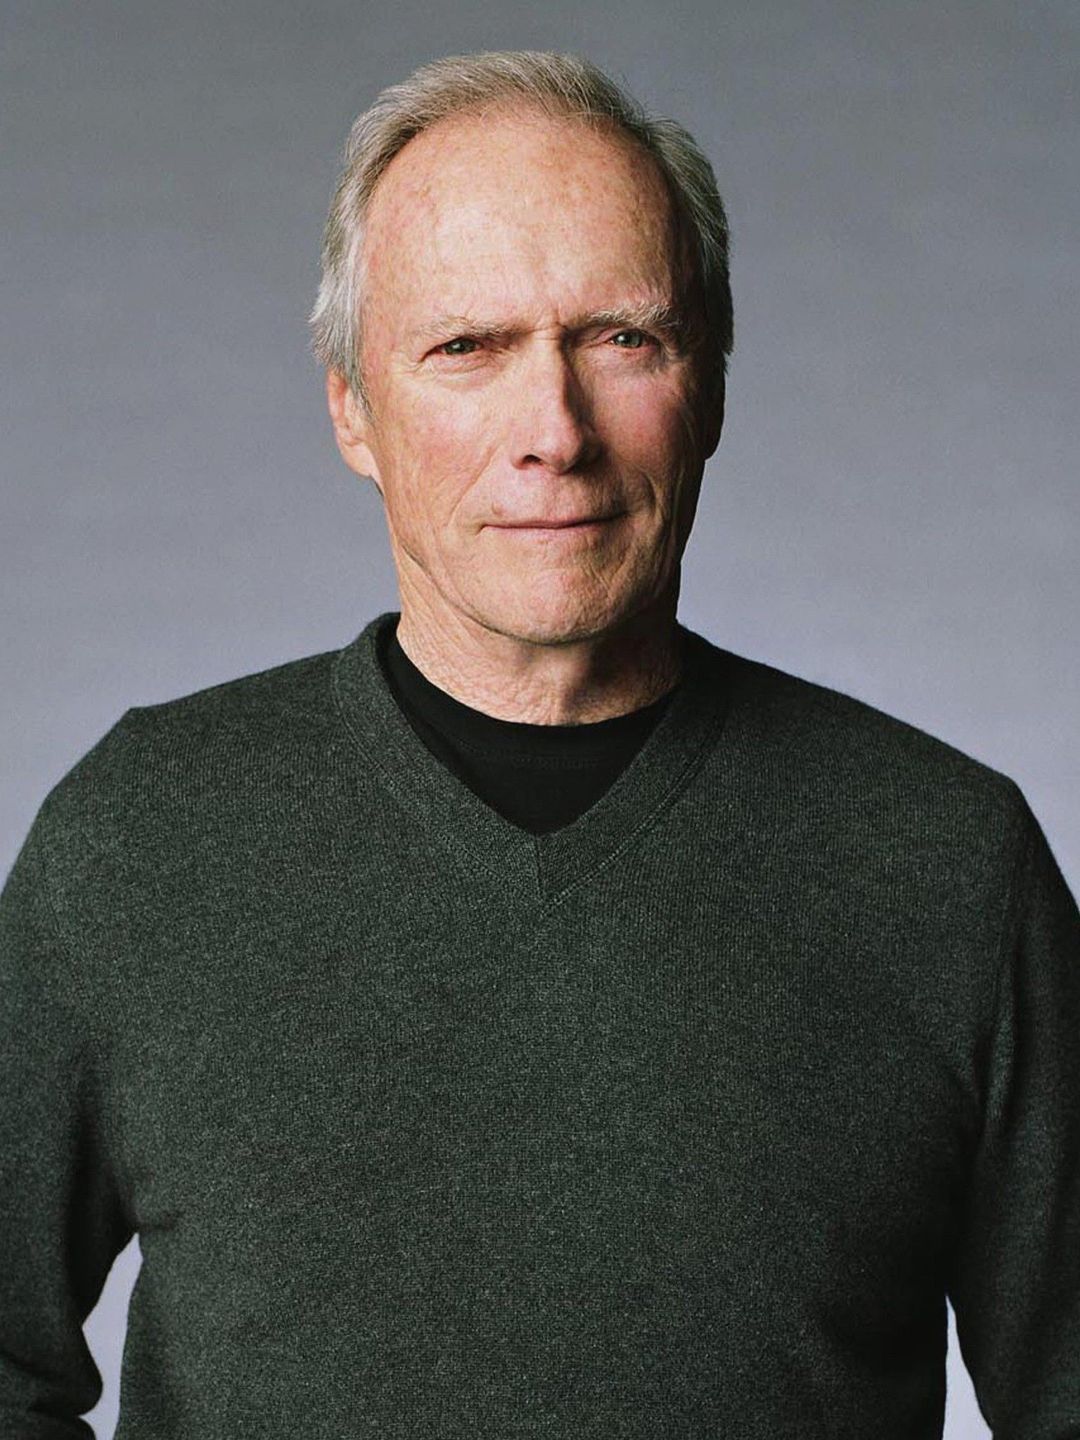 Clint Eastwood net worth